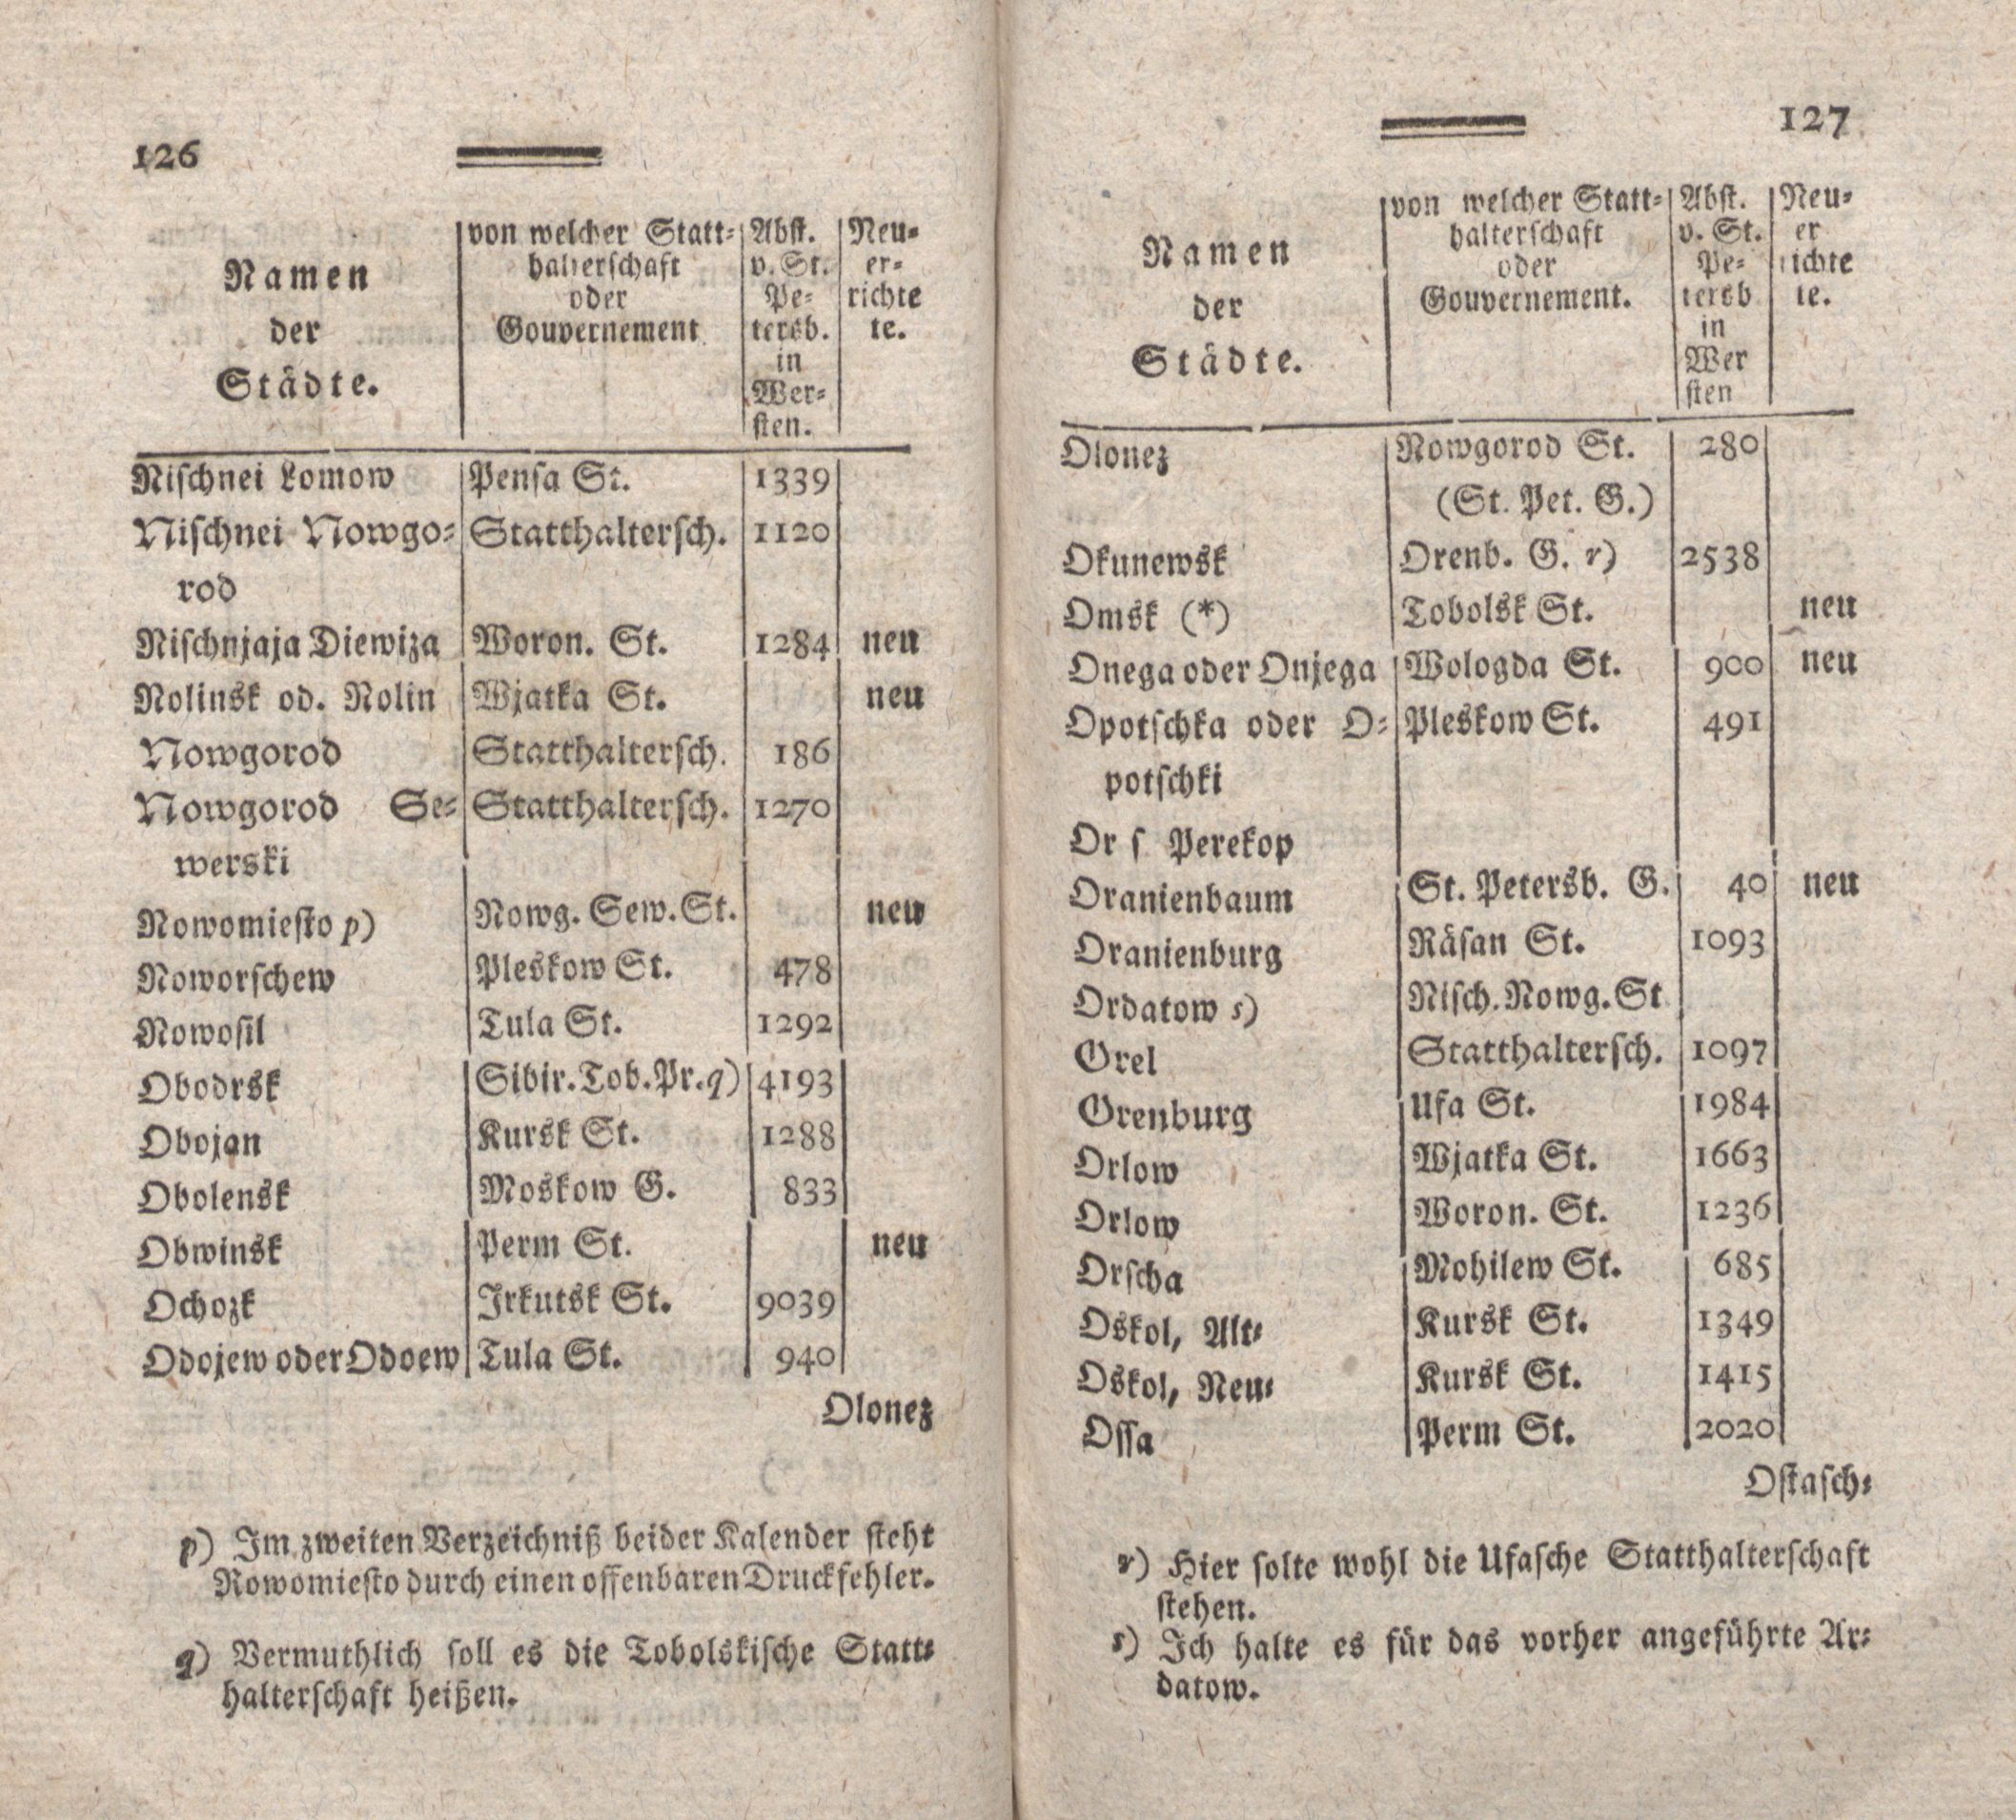 Nordische Miscellaneen [08] (1784) | 64. (126-127) Main body of text